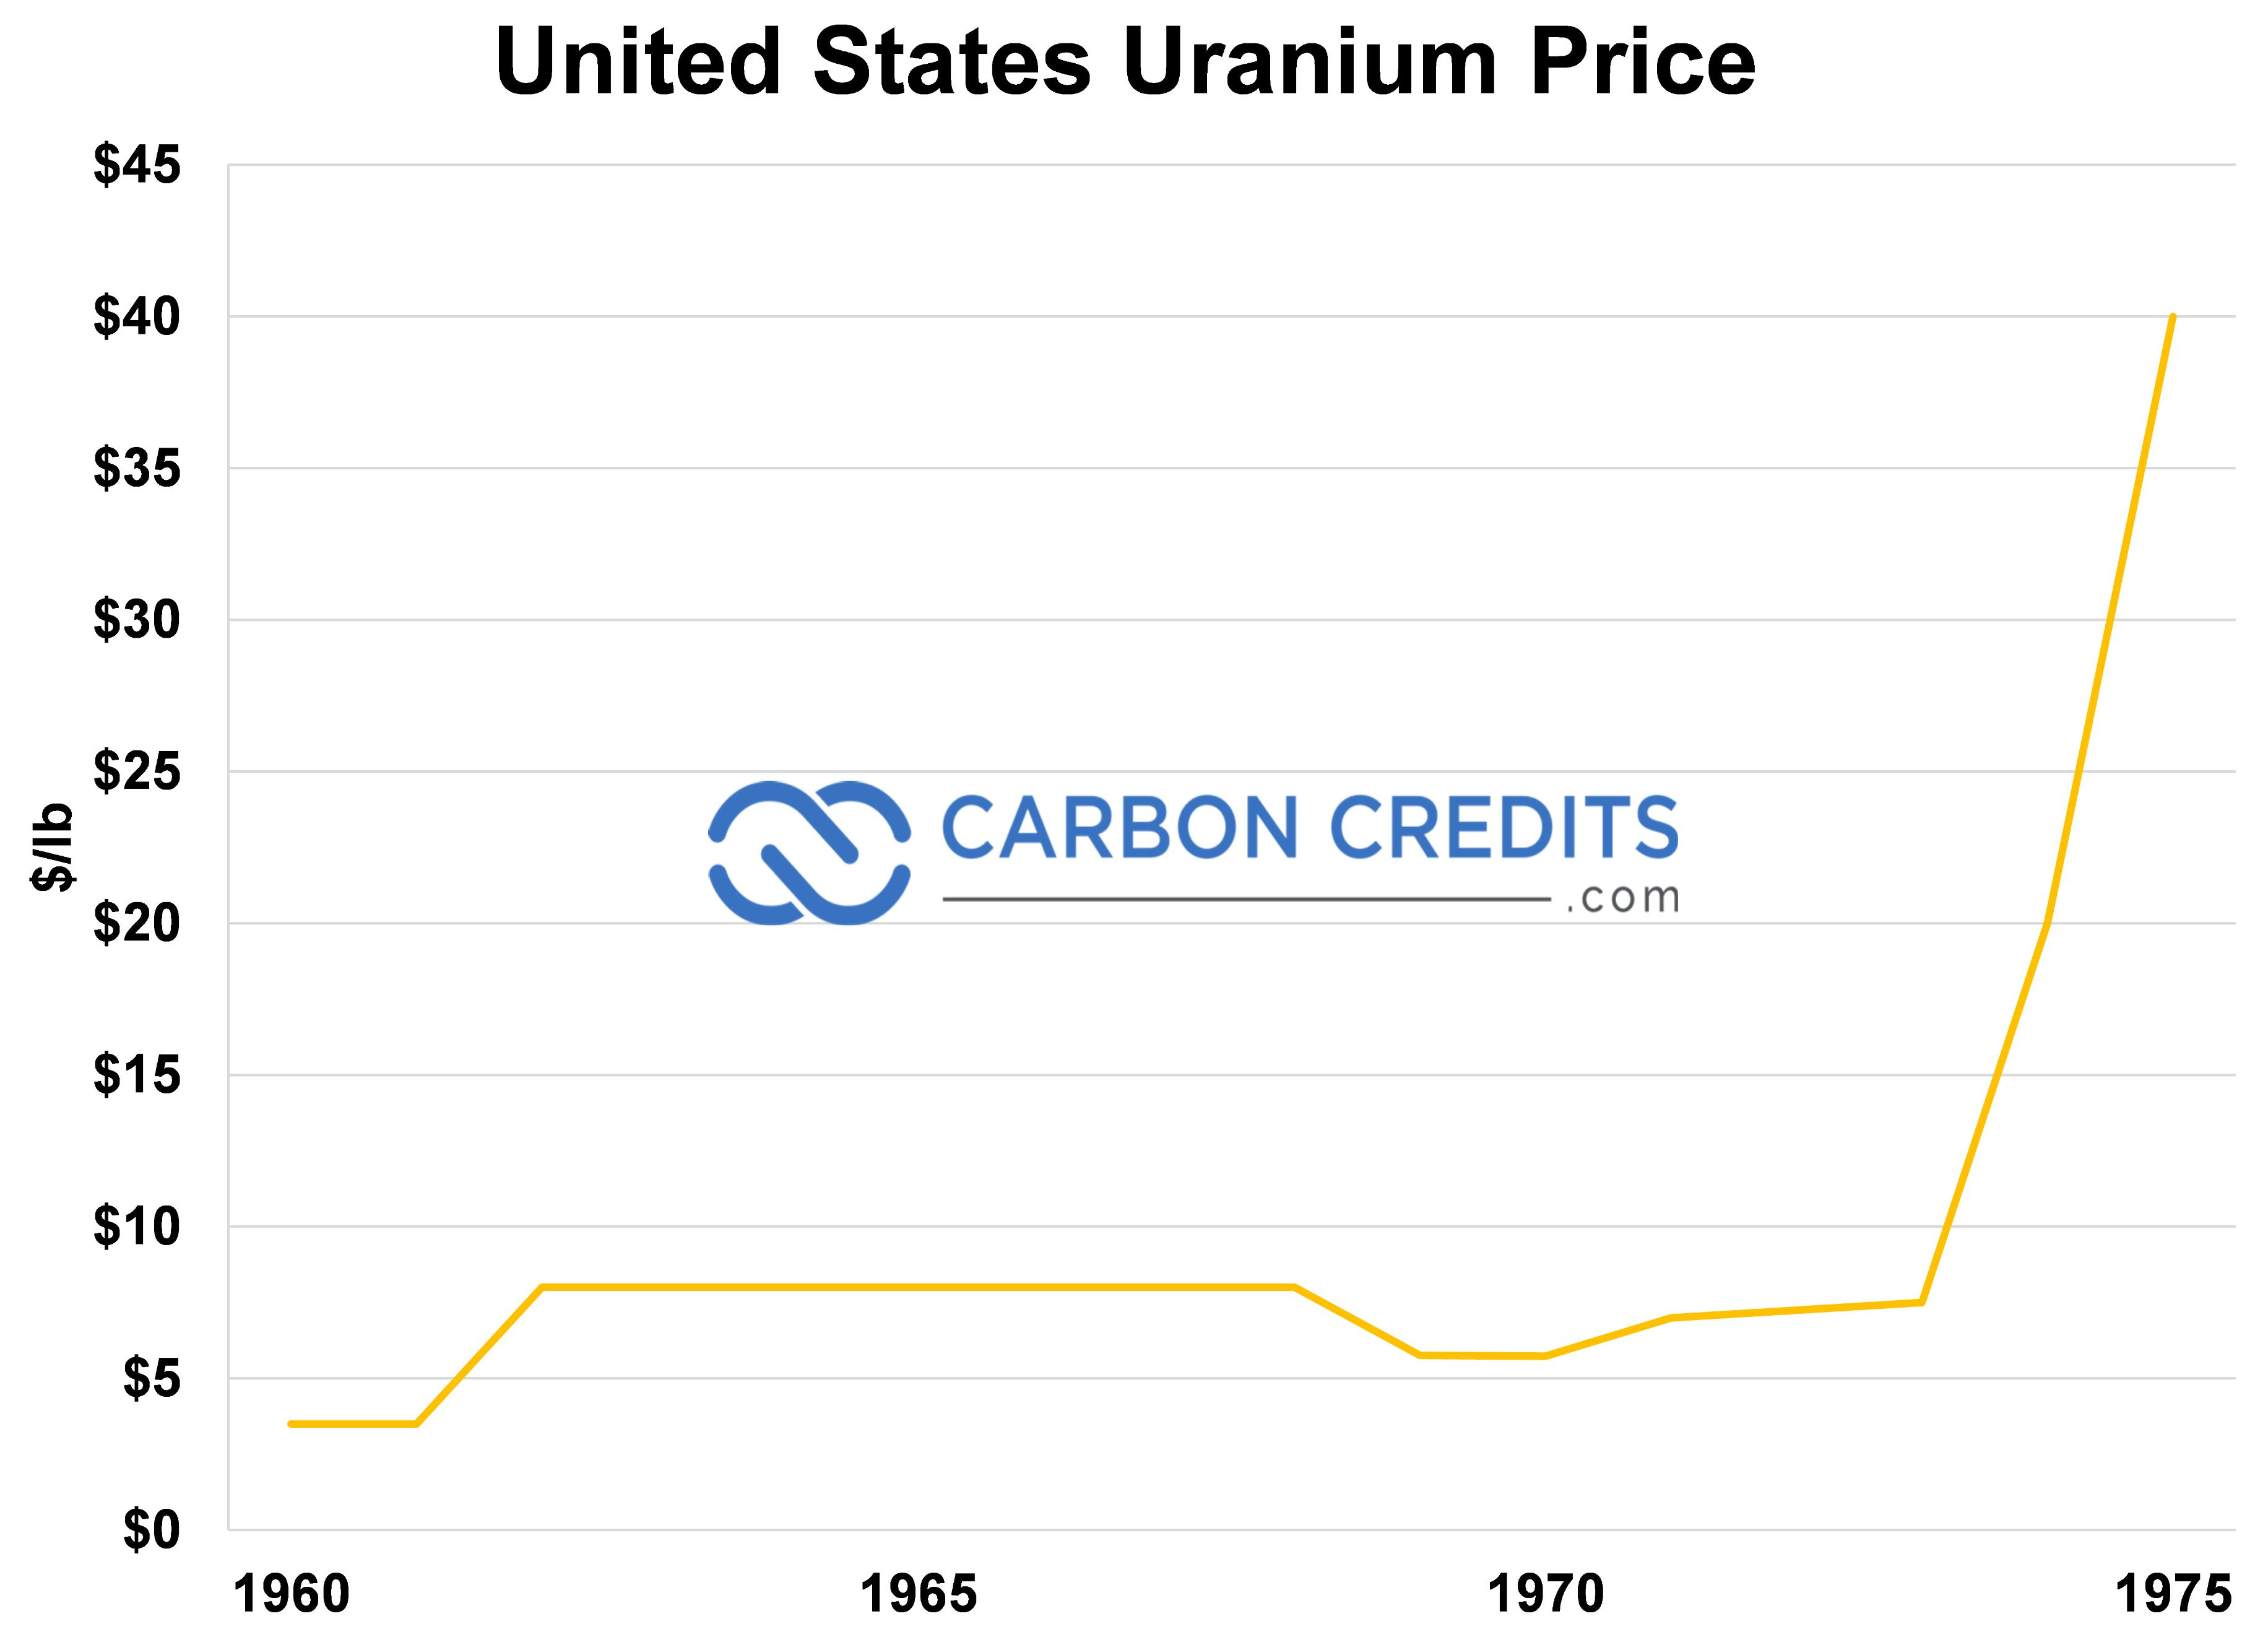 Un gráfico lineal que muestra el precio de los créditos de carbono y el precio del uranio en Estados Unidos.